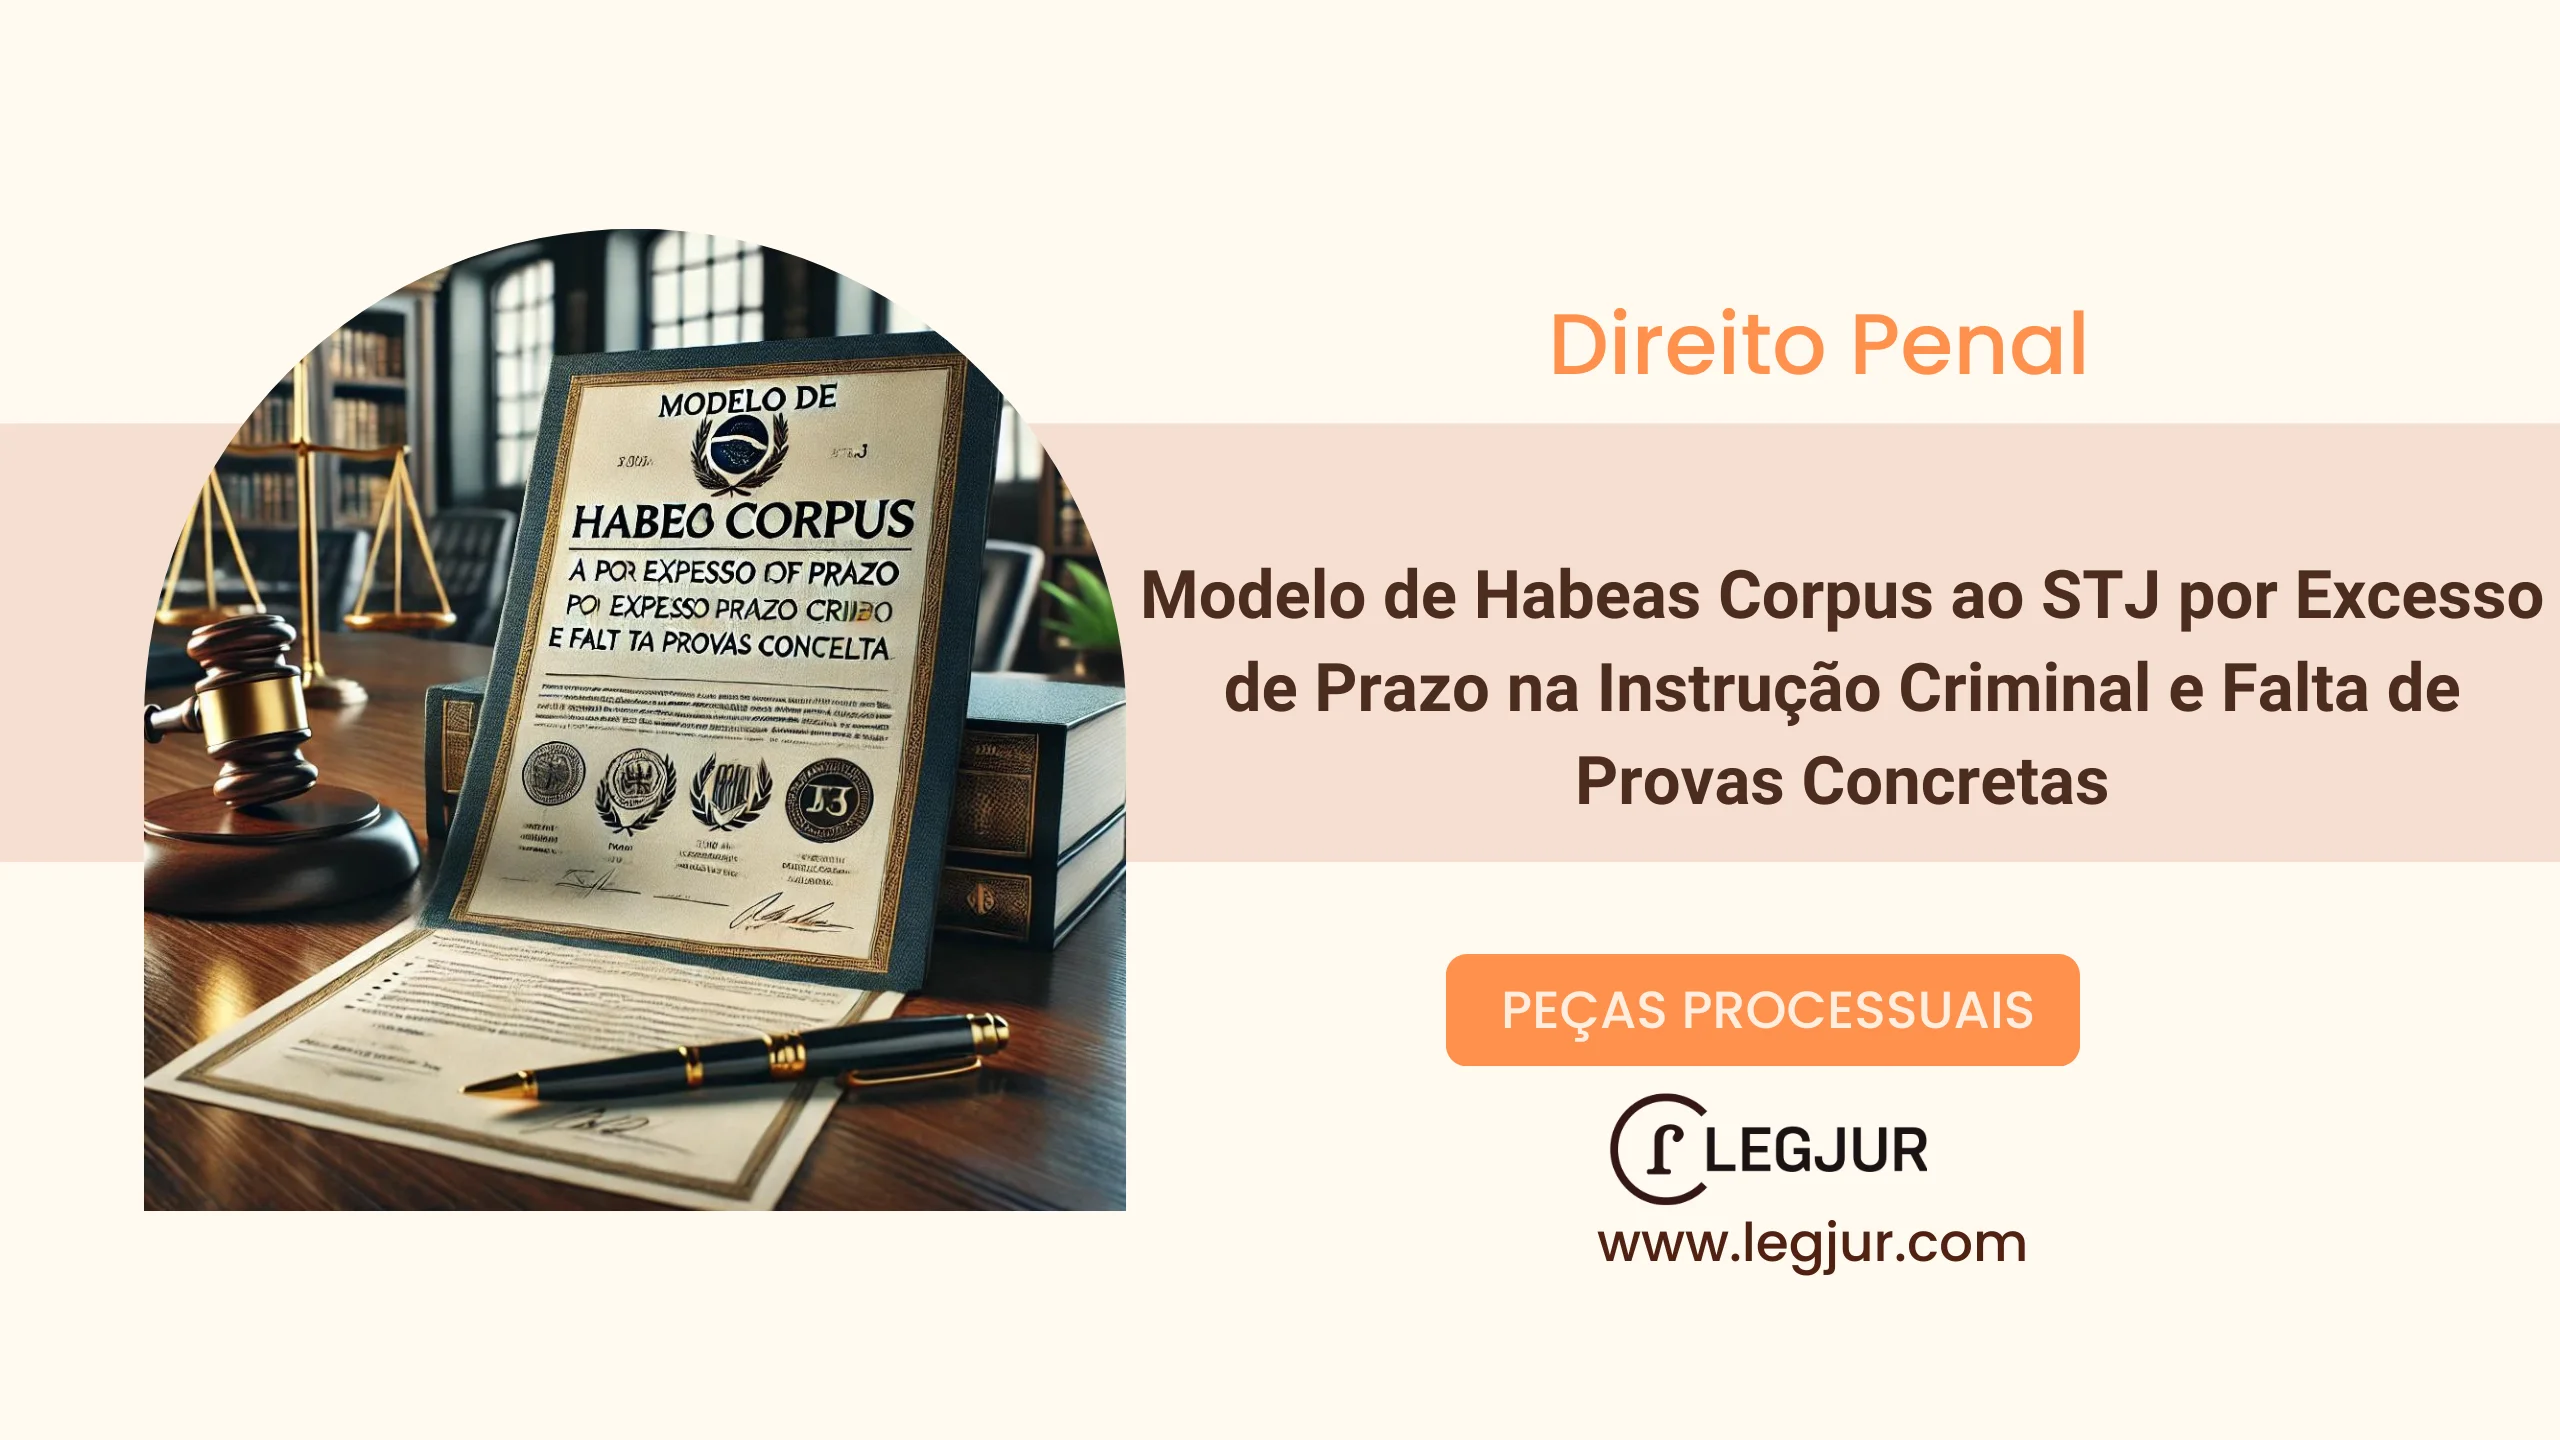 Modelo de Habeas Corpus ao STJ por Excesso de Prazo na Instrução Criminal e Falta de Provas Concretas